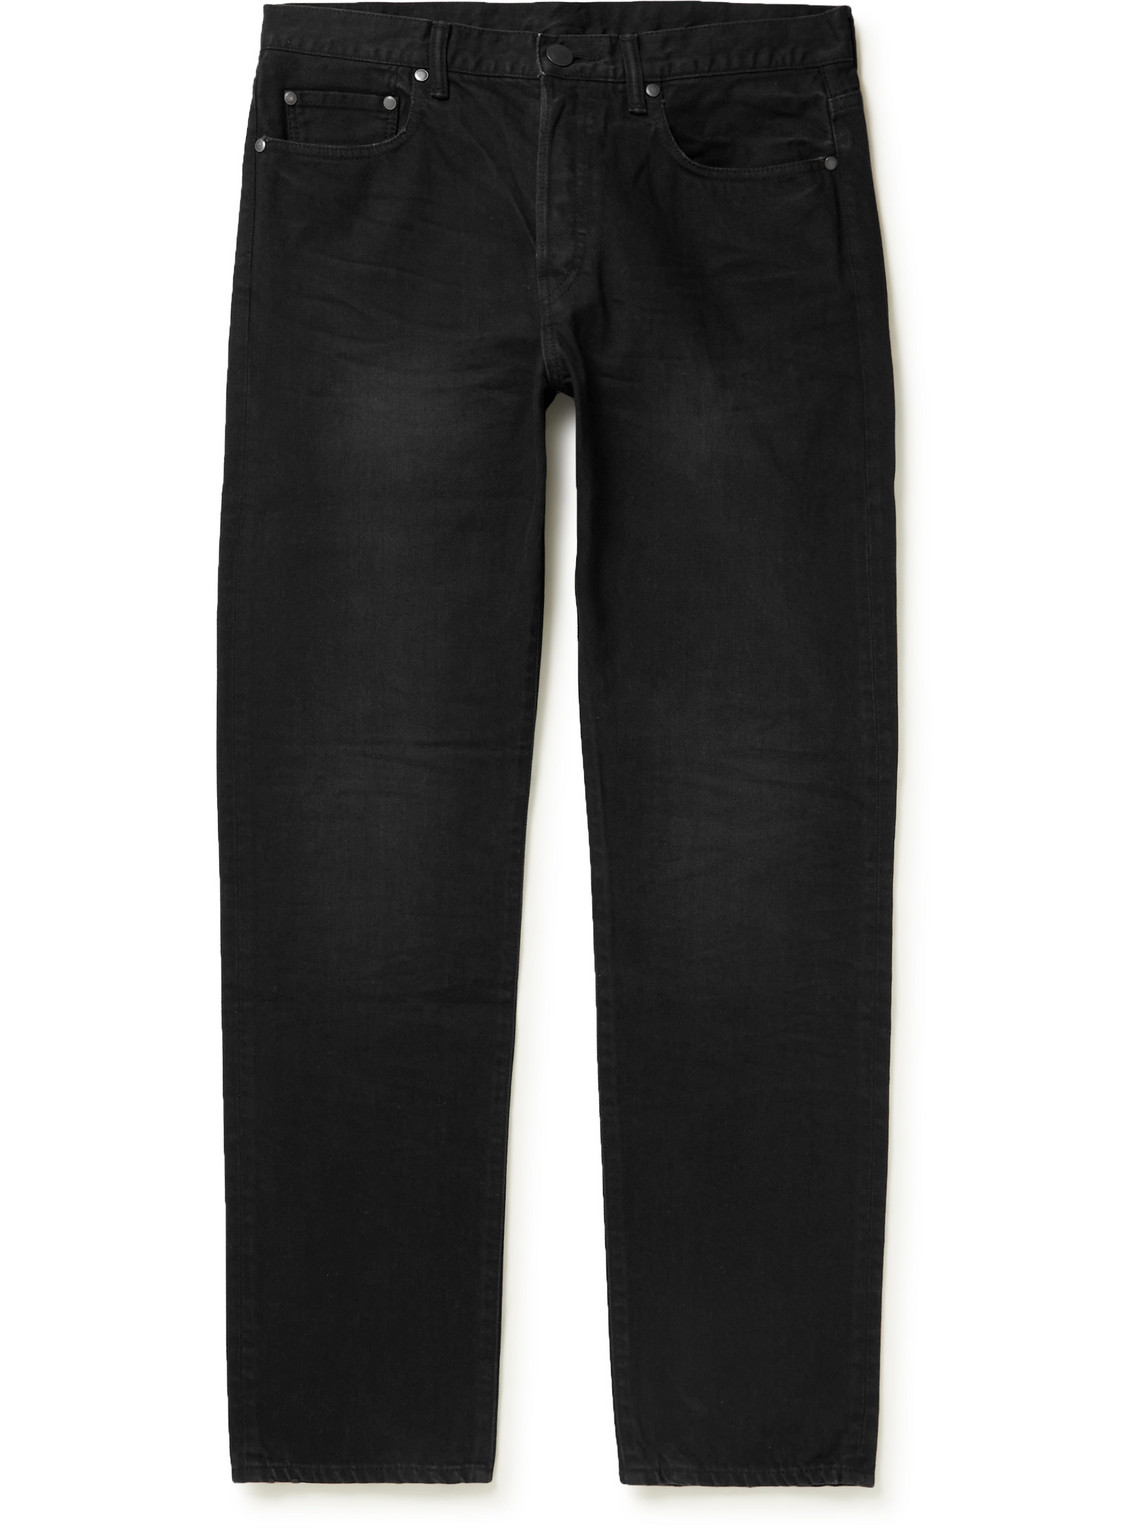 John Elliott Denim The Daze 2 Slim-fit Jeans in Black for Men Mens Clothing Jeans Slim jeans 